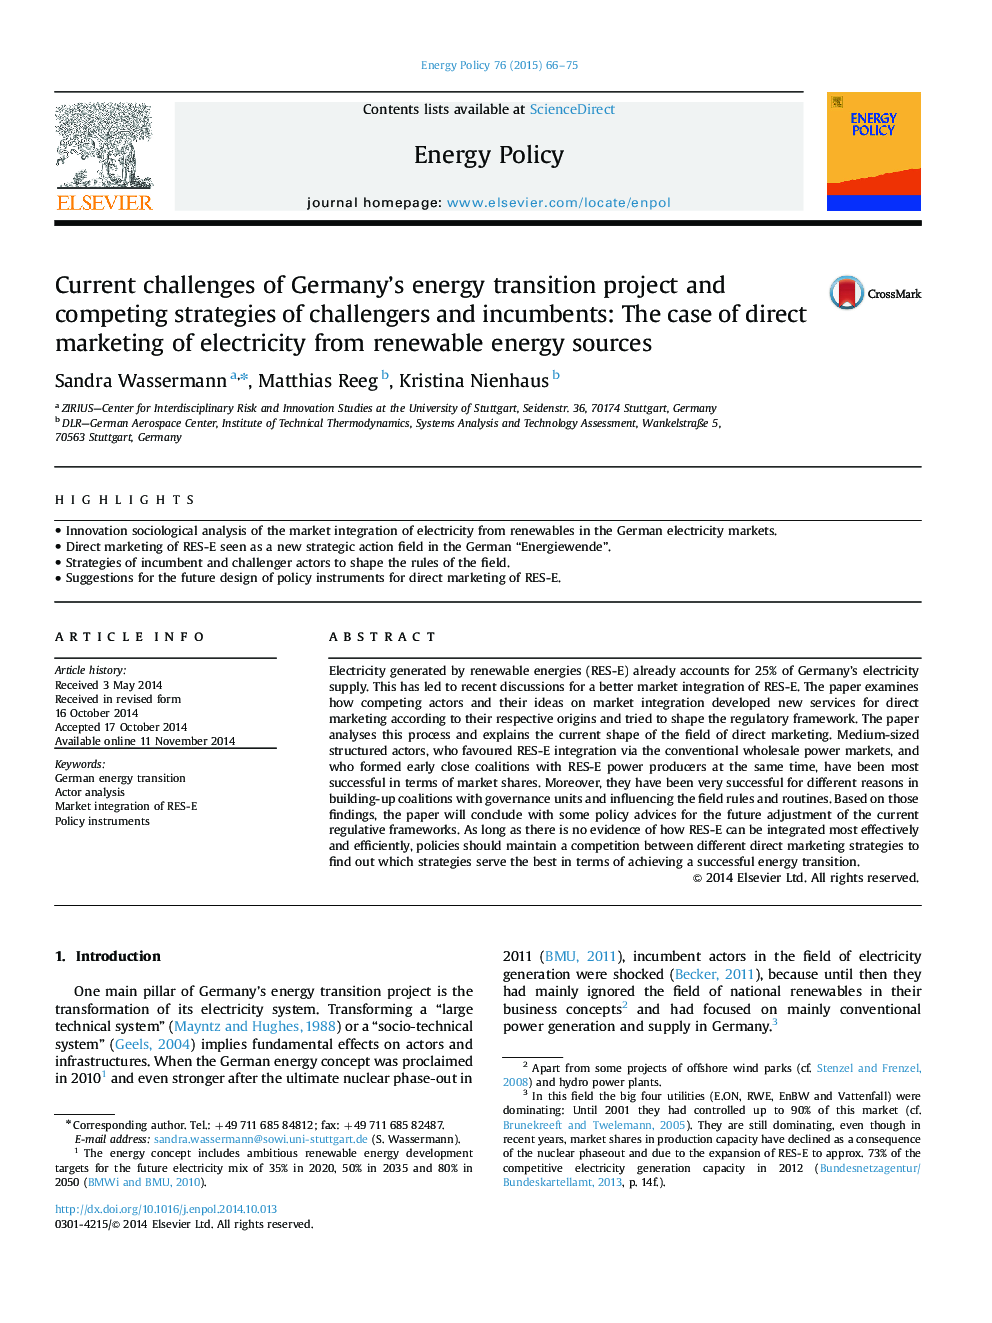 چالش های کنونی پروژه انتقال انرژی آلمان و راهبردهای رقابتی رقبا و شرکت کنندگان: پرونده بازاریابی مستقیم برق از منابع انرژی تجدید پذیر 